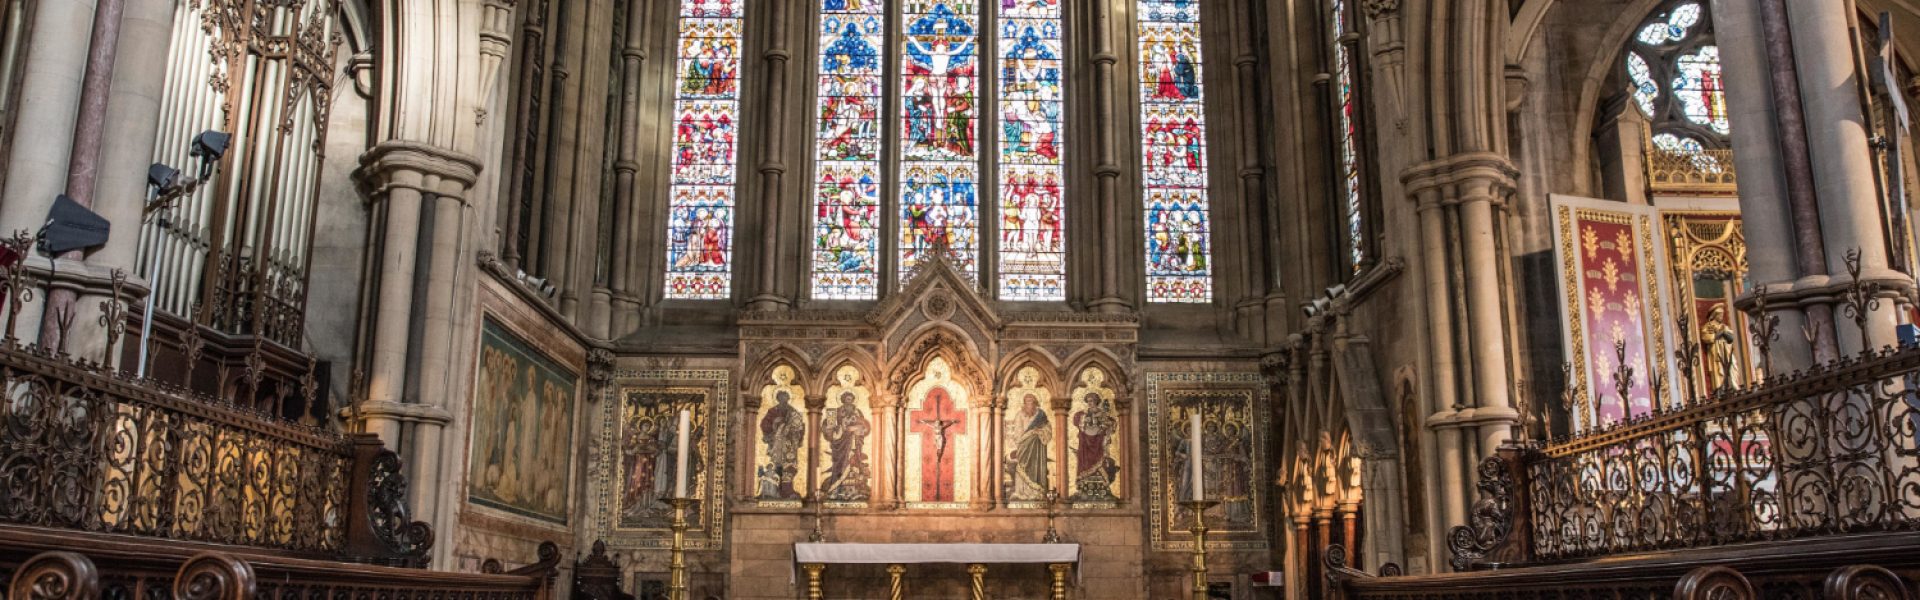 vista-interior-iglesia-iconos-religiosos-paredes-ventanas